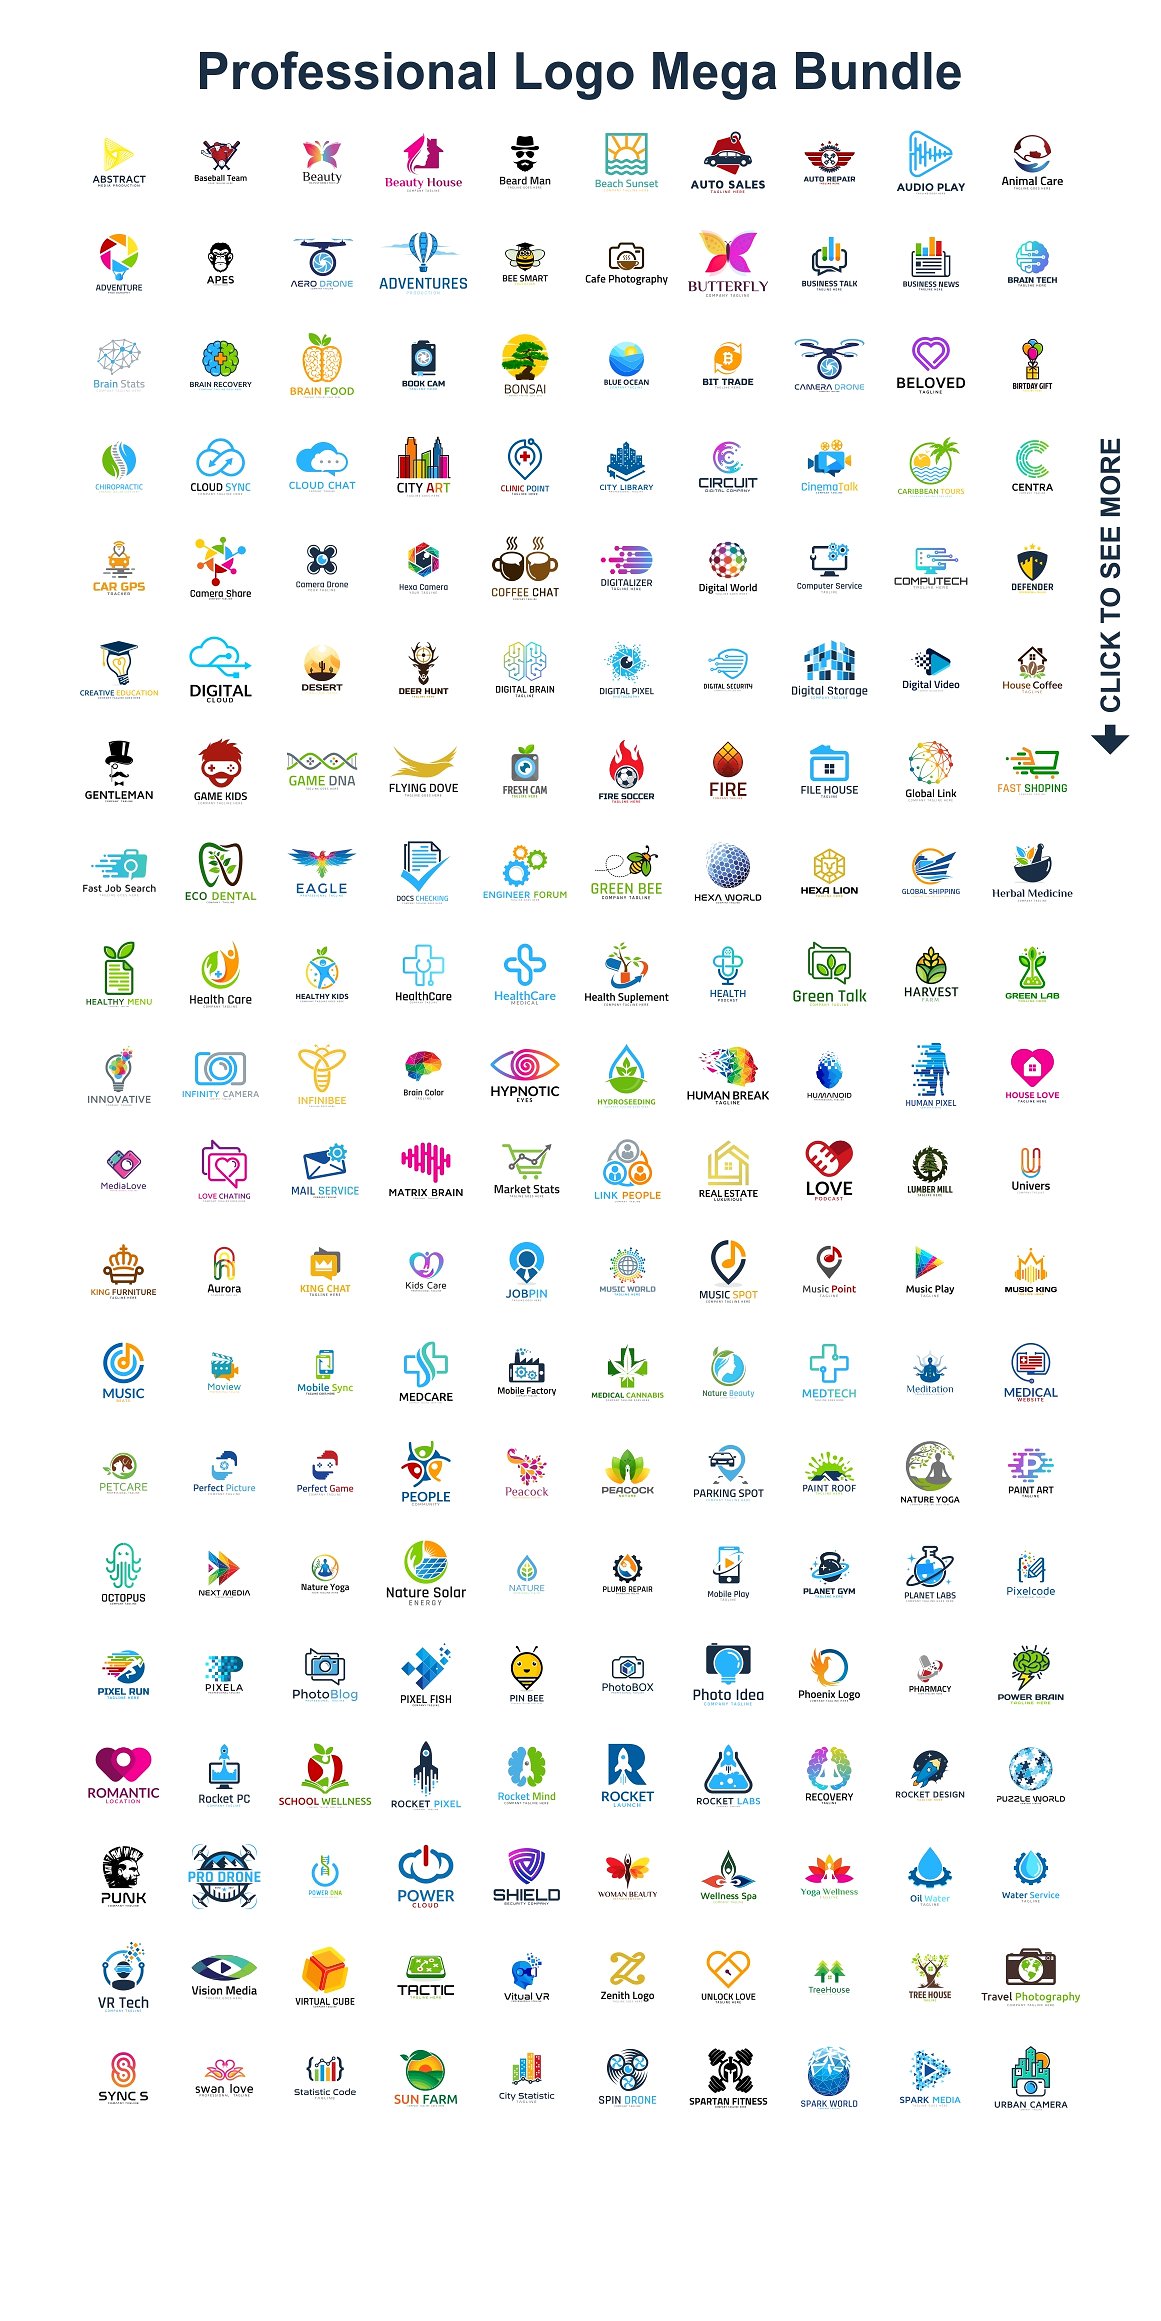 200款专业标志设计AI矢量模板包 Logo Template Mega Bundle – 200 in 1插图1